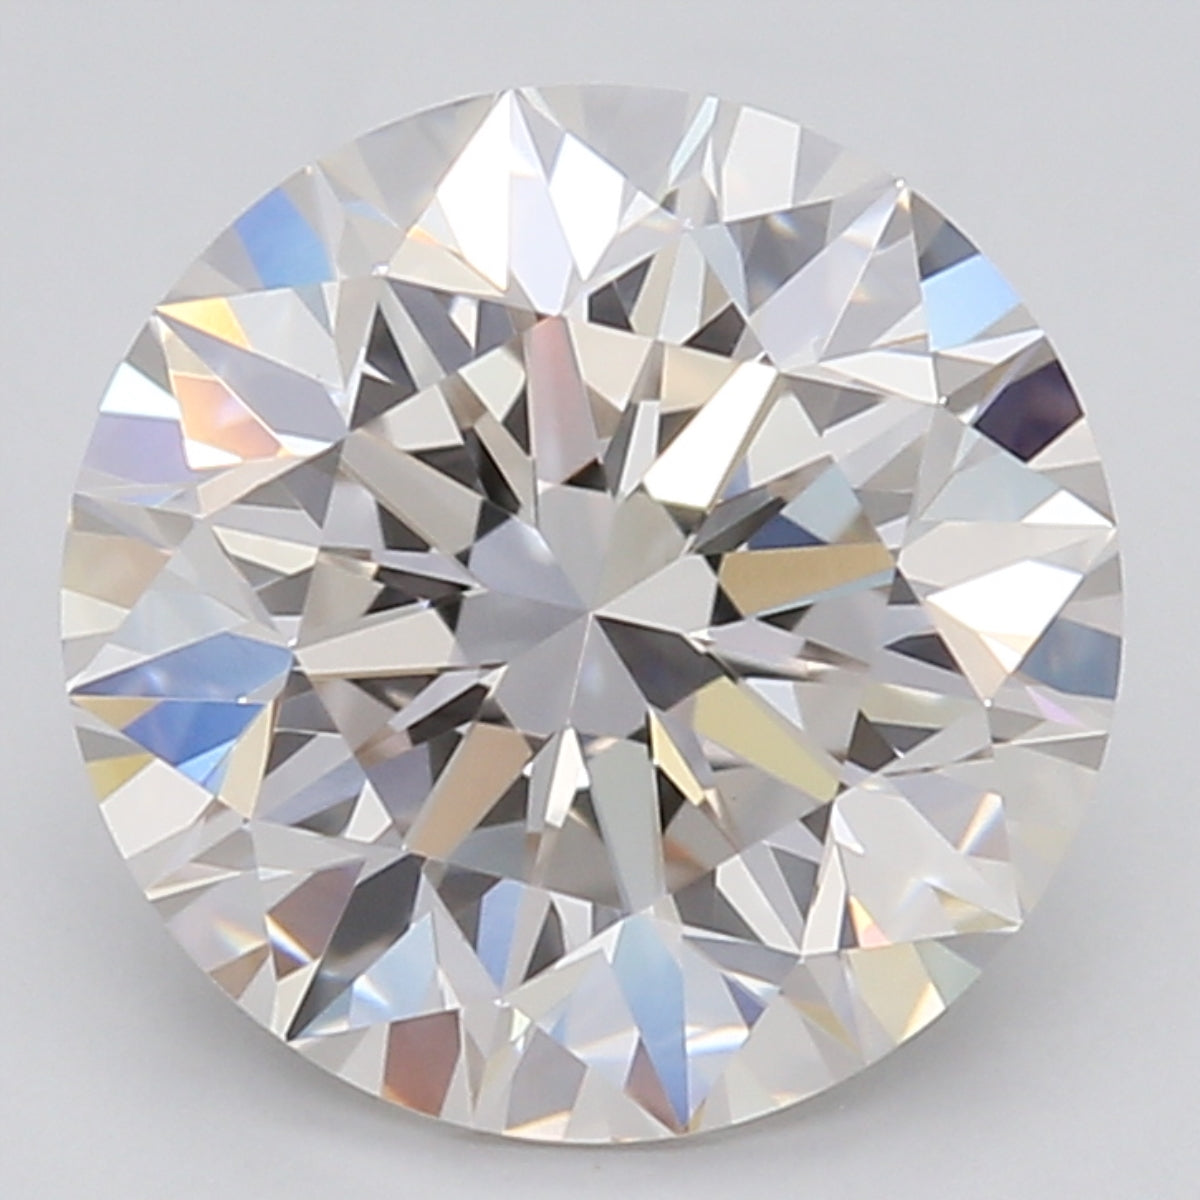 1.58 Carat Round Cut Lab Created Diamond